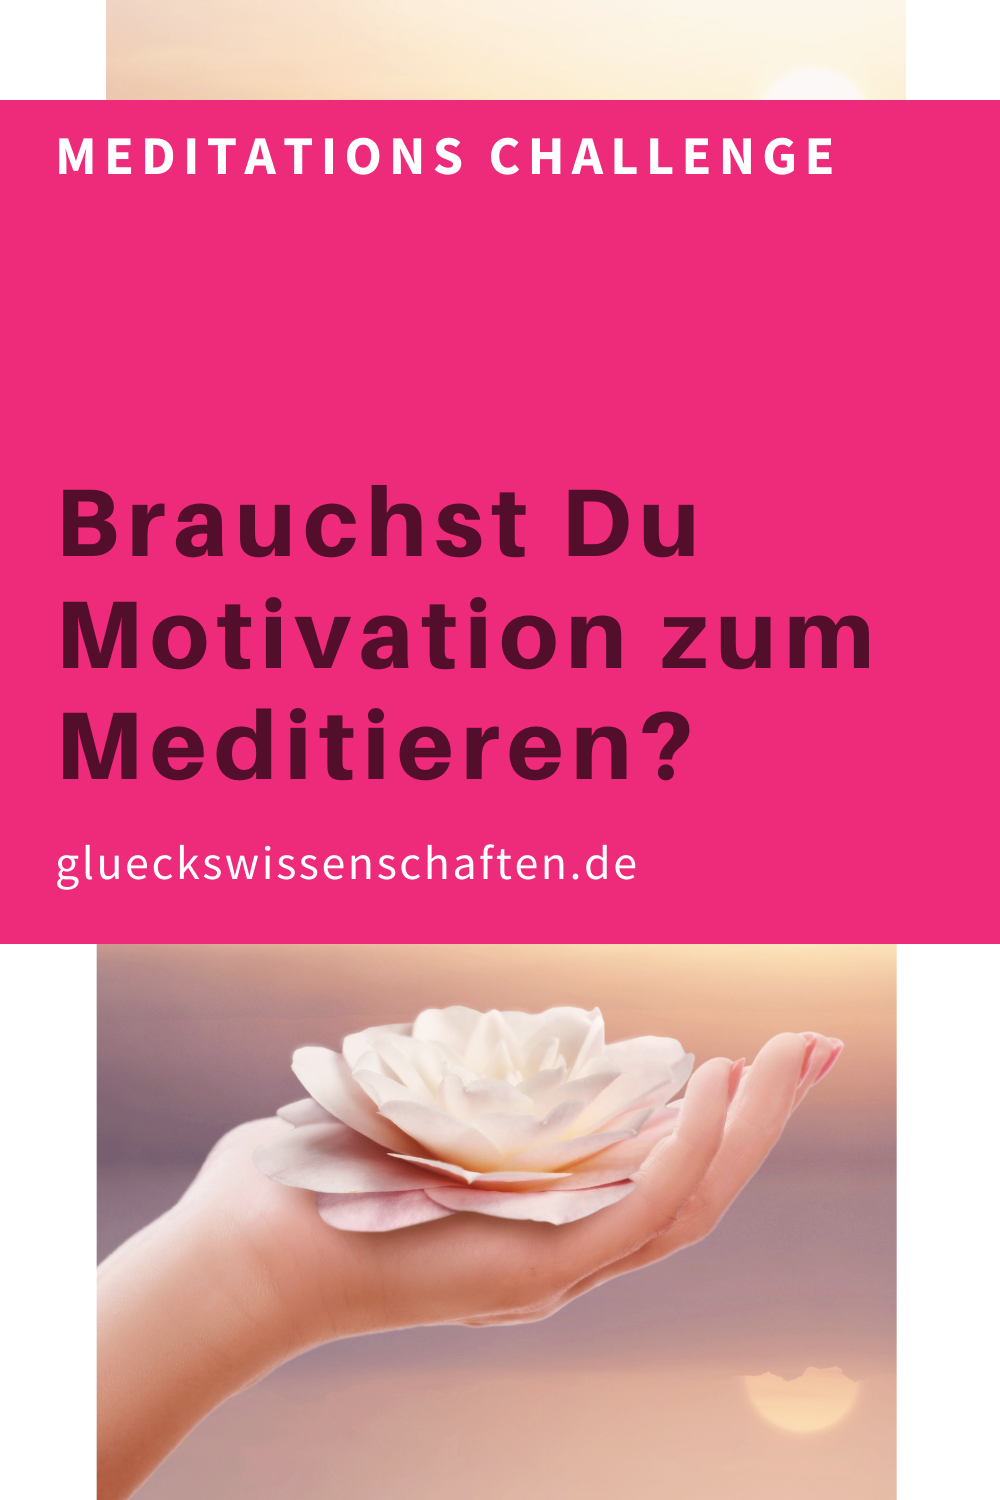 Glueckswissenschaften- Meditations Challenge Brauchst Du Motivation zum Meditieren